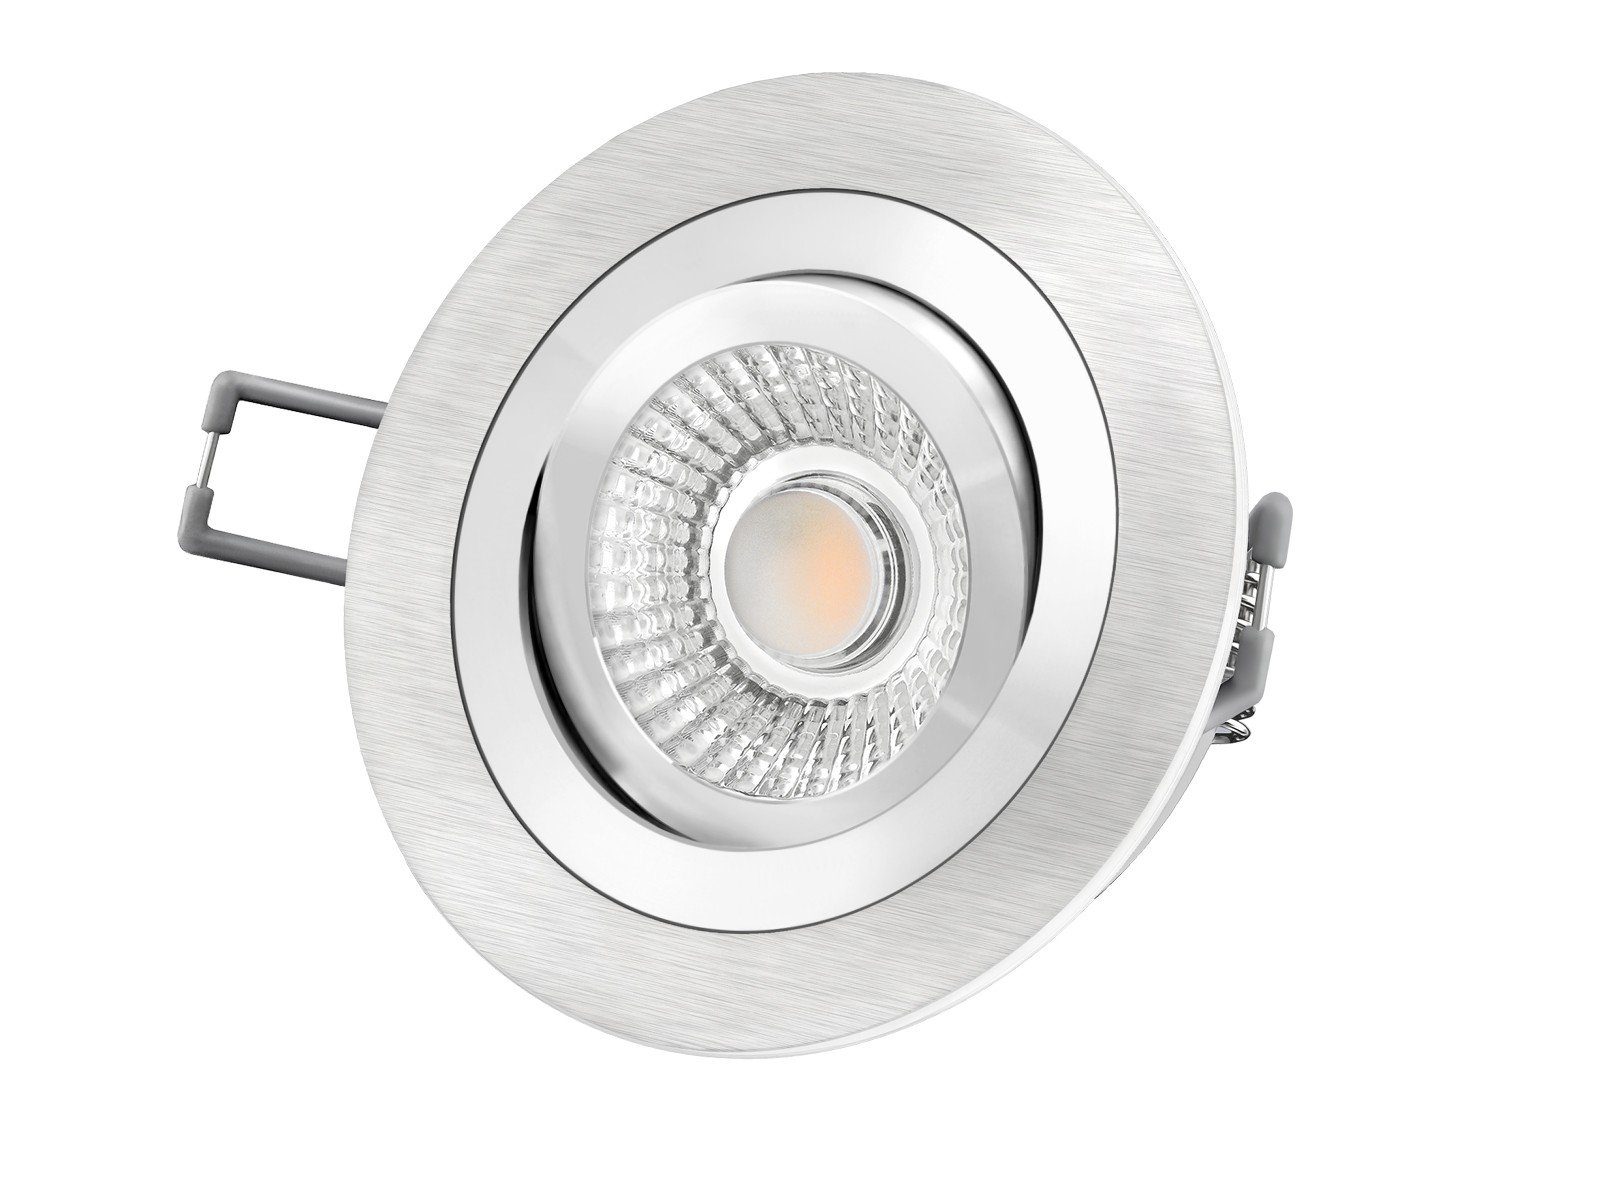 SSC-LUXon LED Einbaustrahler RF-2 LED-Einbauspot rund flach Alu schwenkbar  inkl. LED-Modul 230V, 6W, warmweiß 2700K dimmbar, Warmweiß